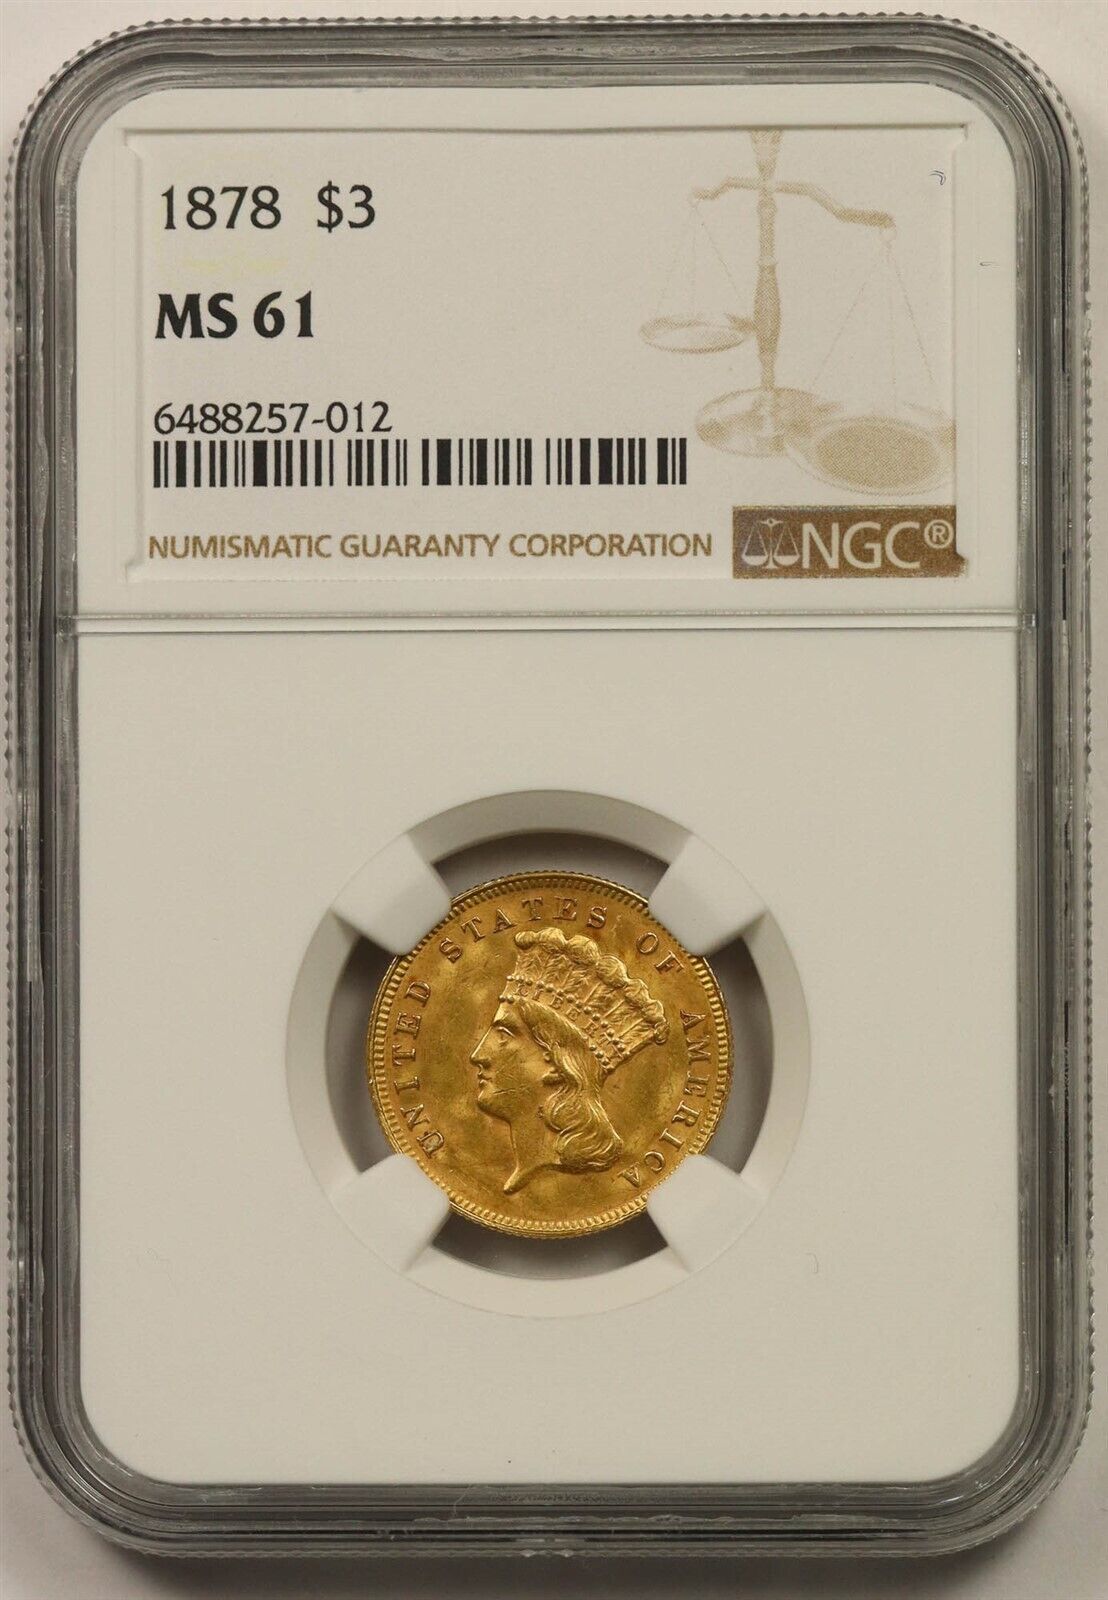 1878 $3 Ngc Ms 61 Indian Princess Head Three Dollar Gold Piece